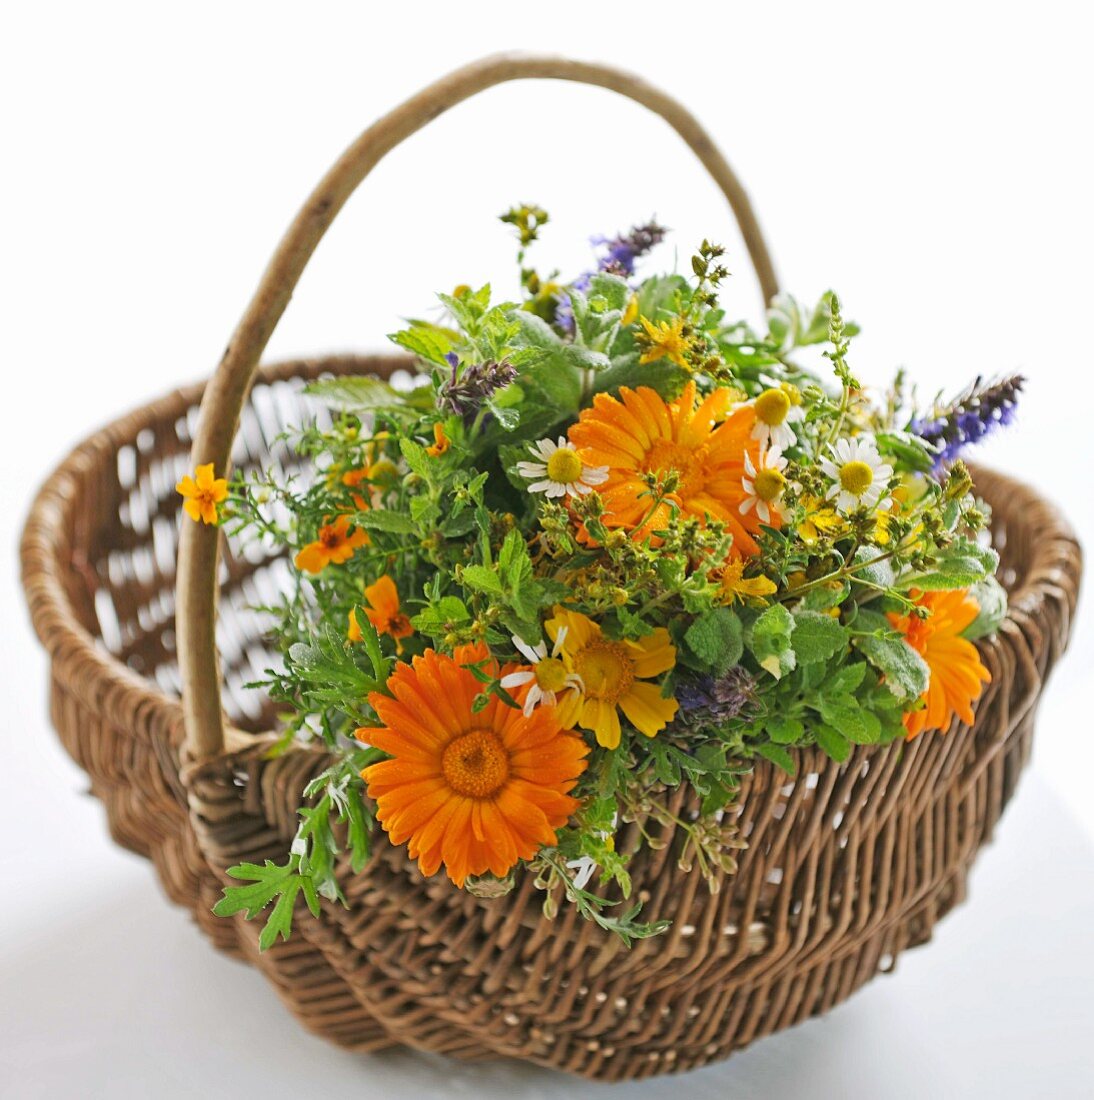 Bouquet of garden flowers in a wicker basket